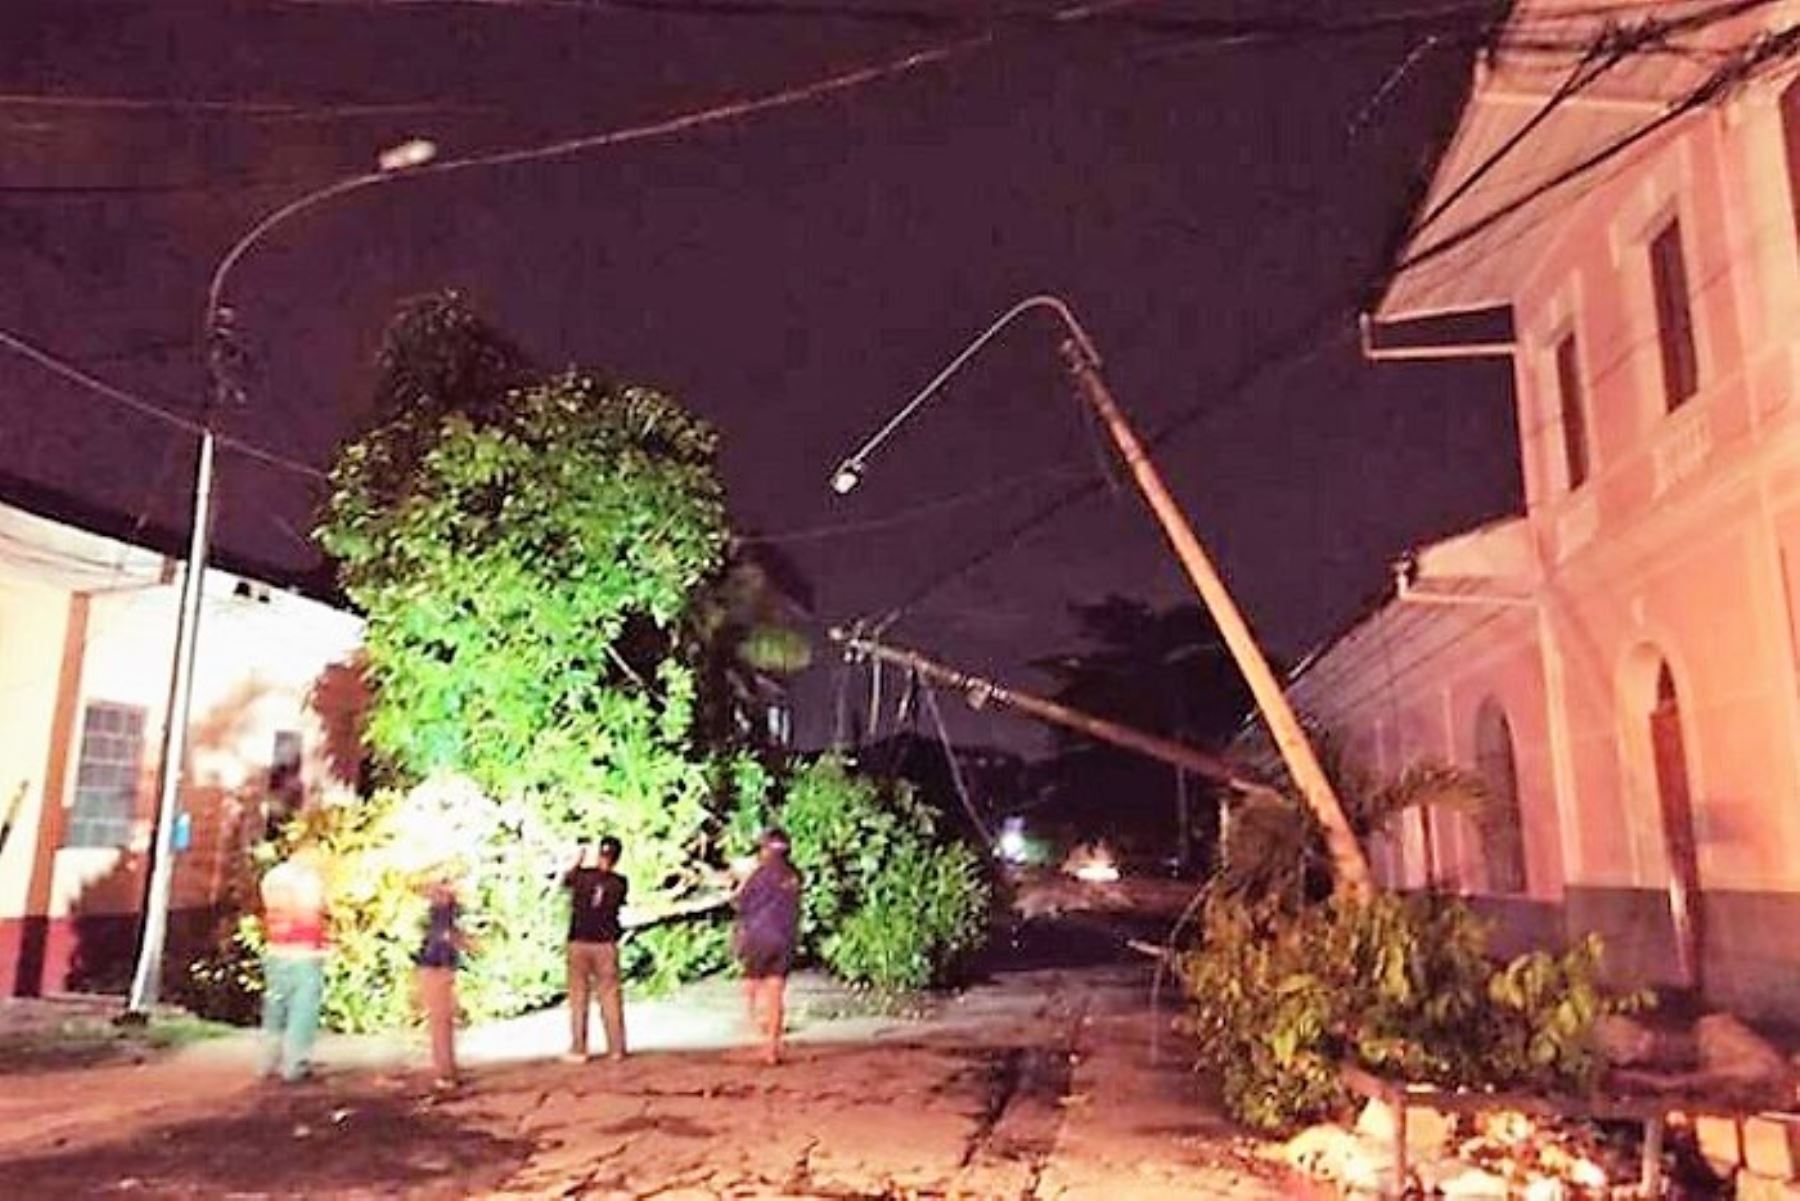 Vientos fuertes causan daños en diez viviendas y postes eléctricos. Foto: Twitter